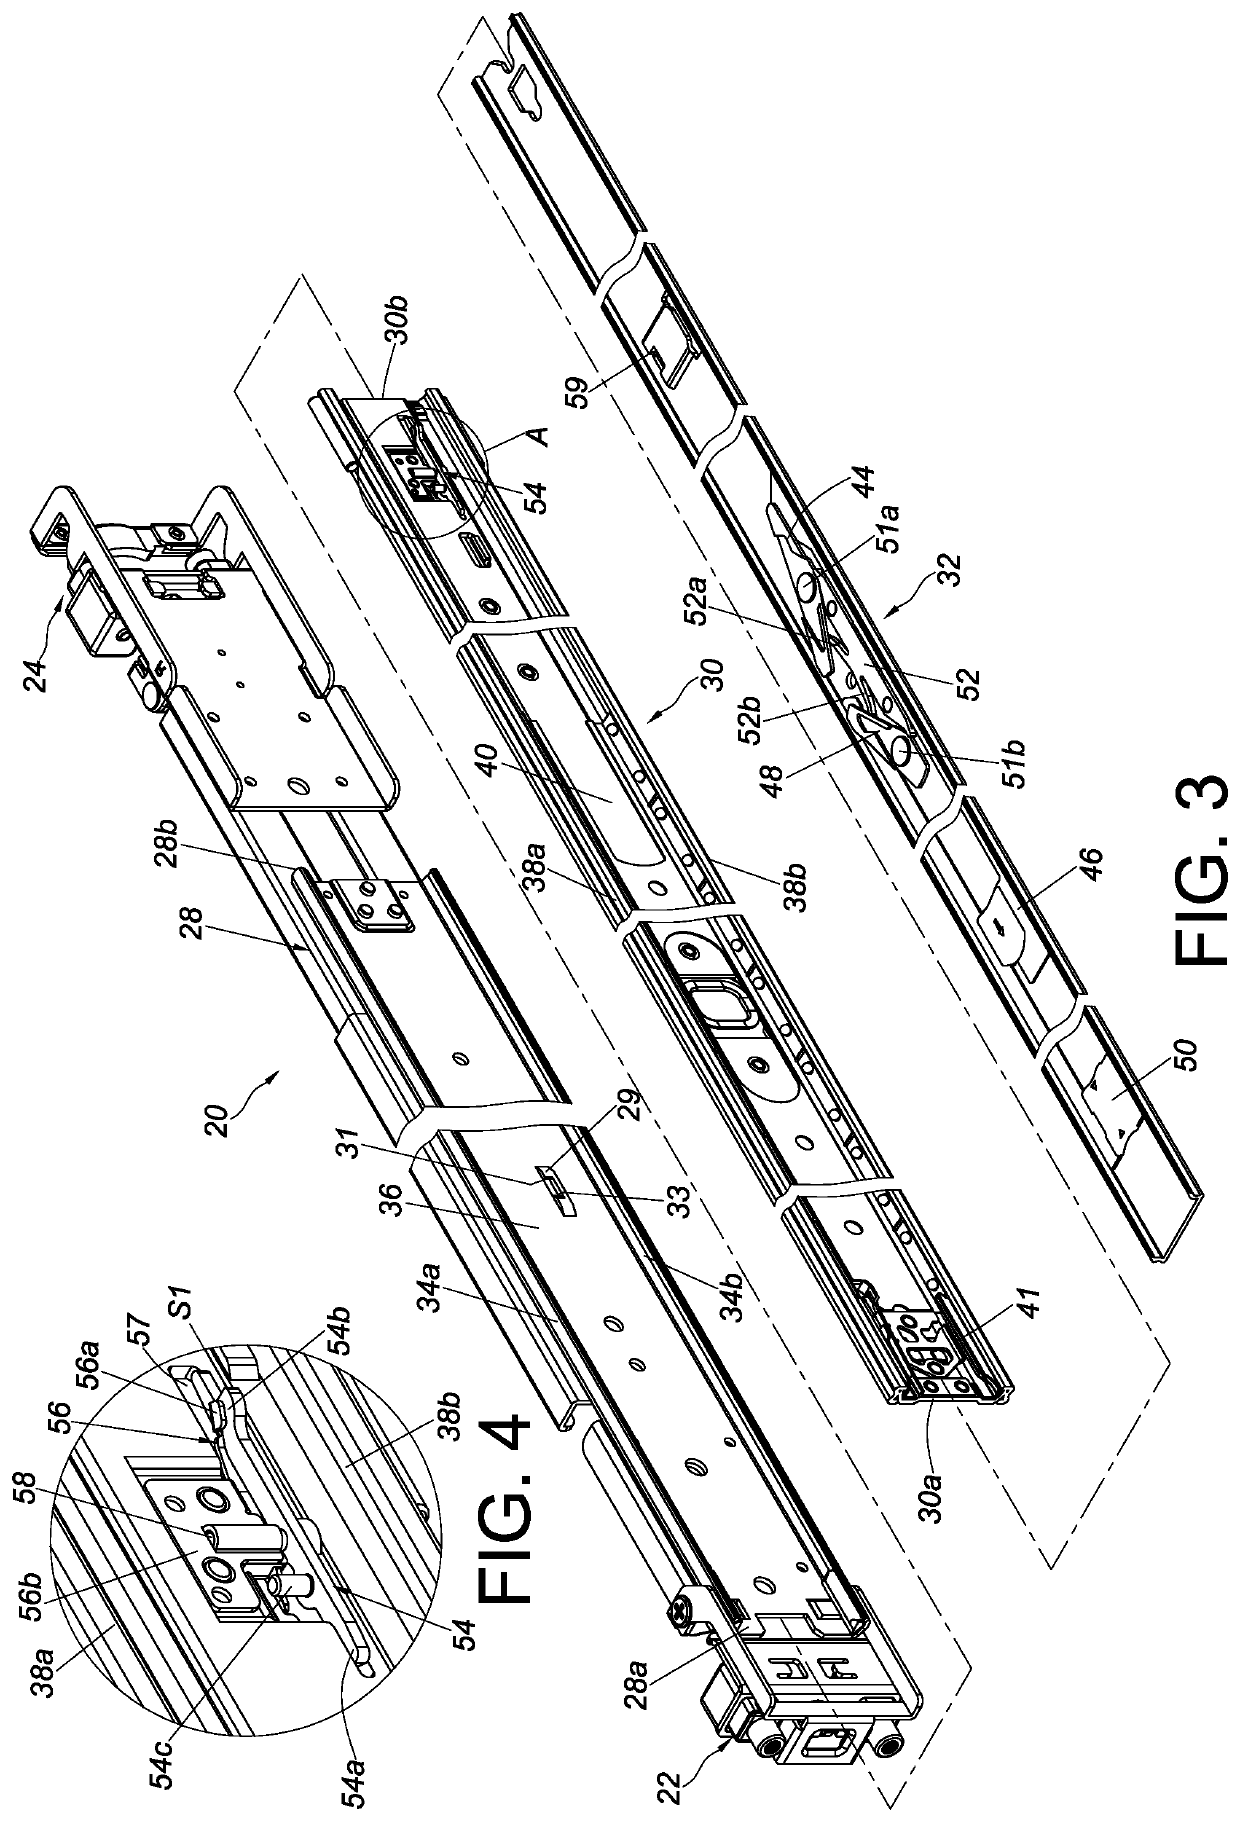 Slide rail assembly